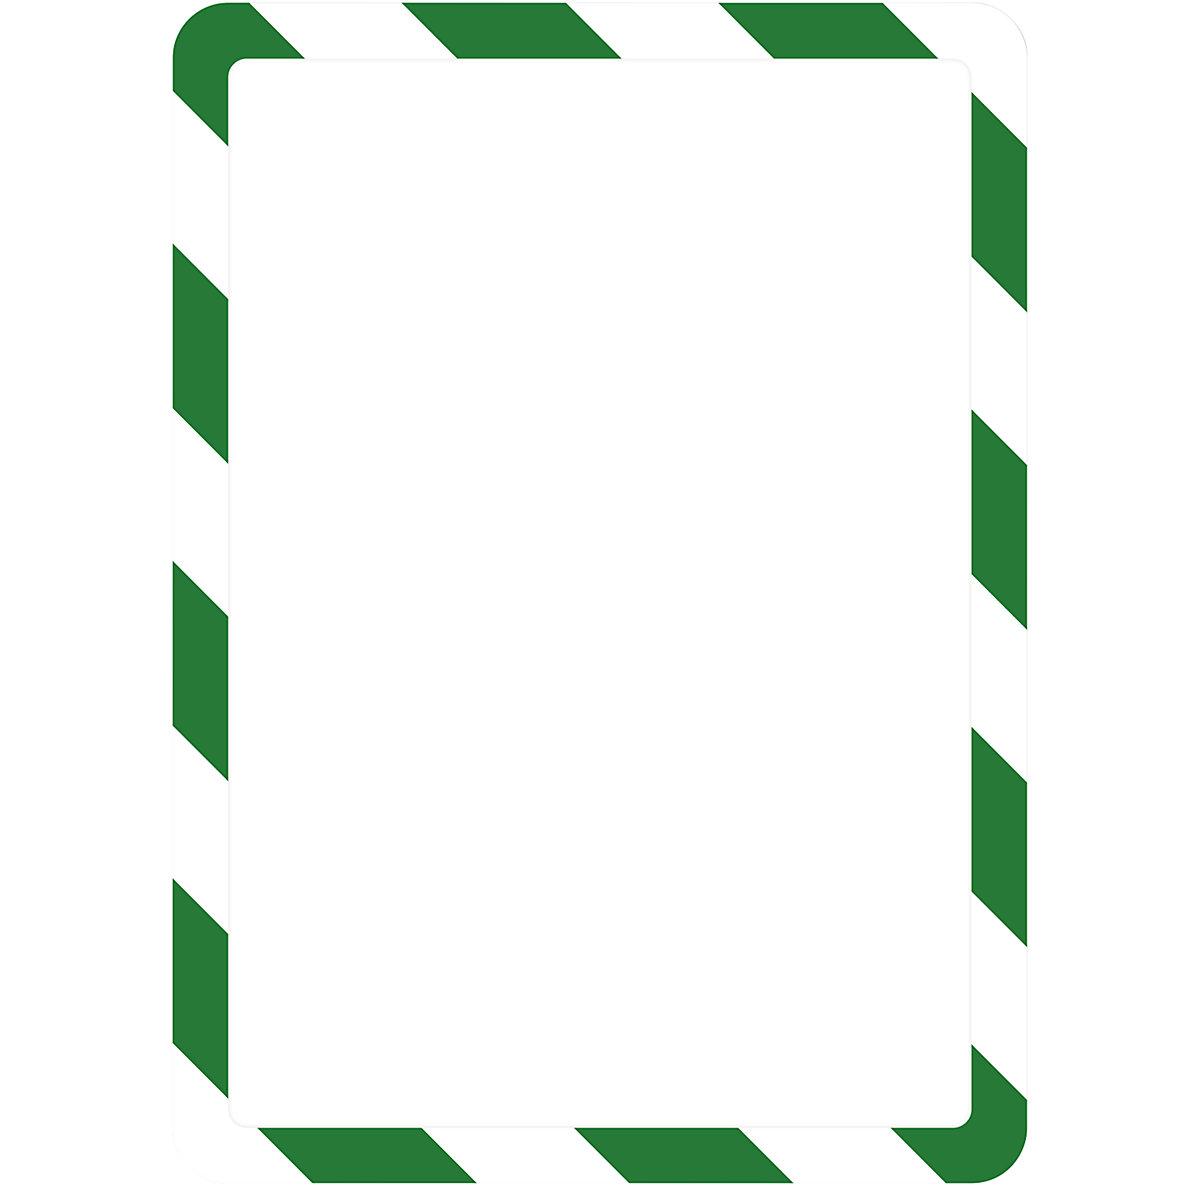 Pochette de présentation A4 – Tarifold, avec fermeture magnétique, vert / blanc, lot de 2-5